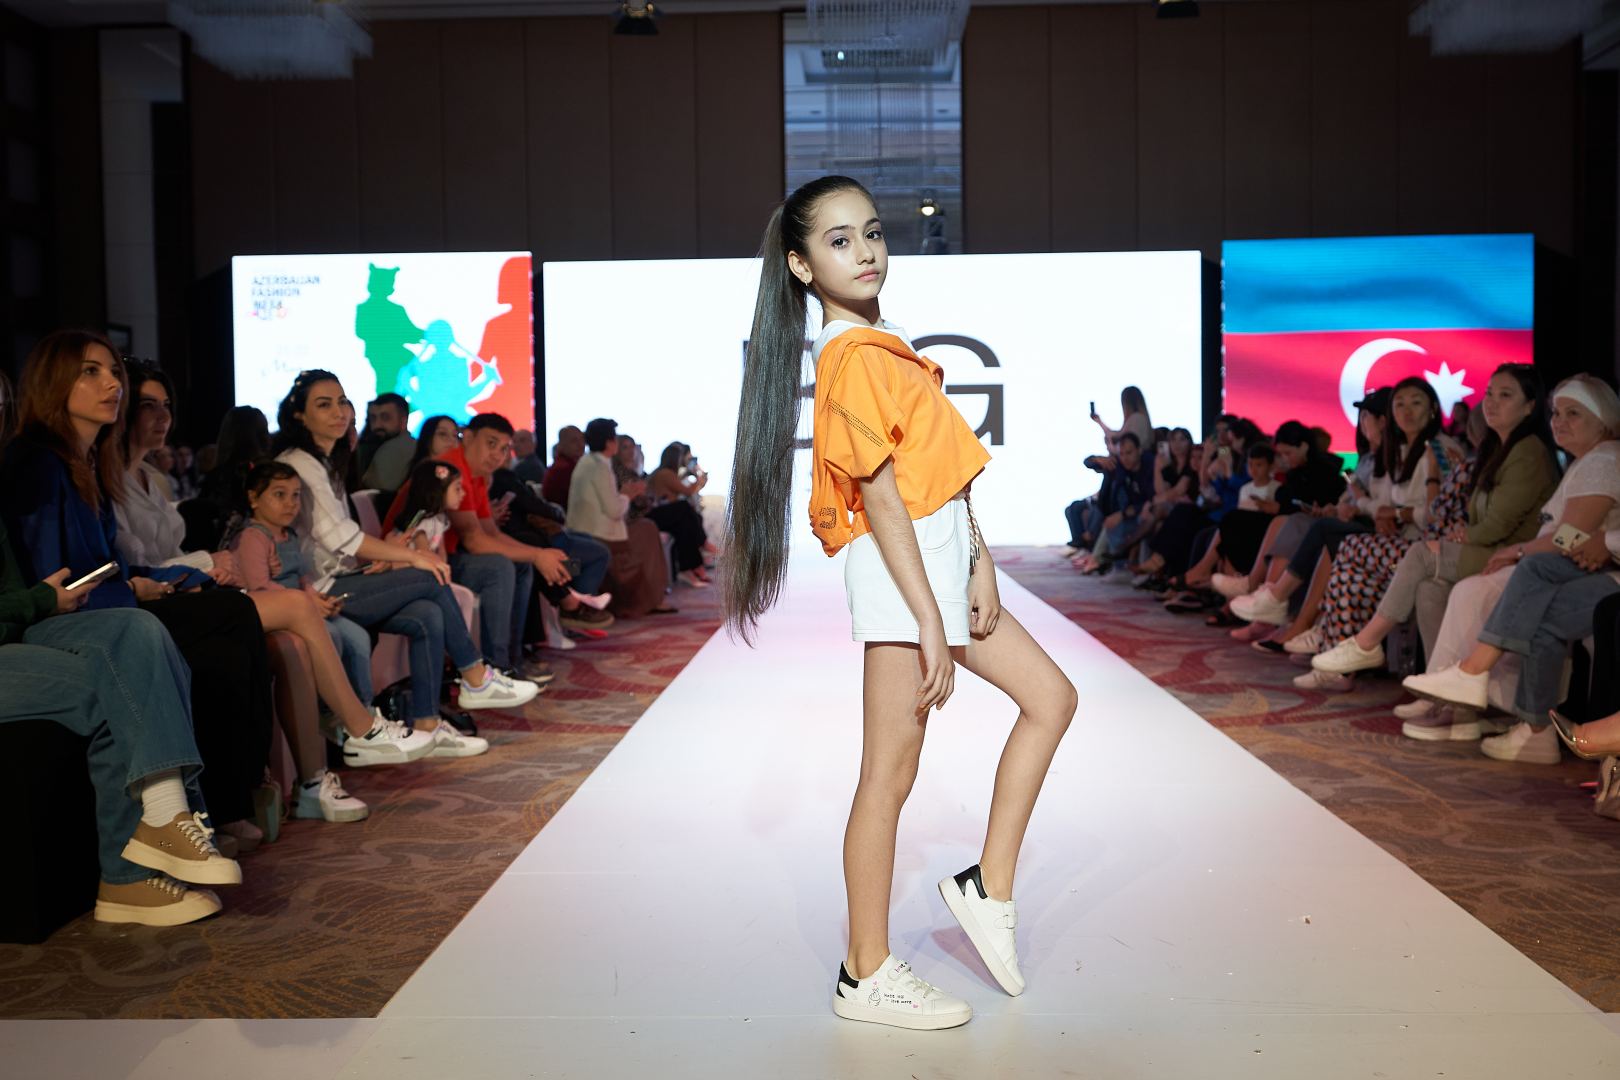 Приятный шок на Azerbaijan Fashion Week 2022 - на подиум вышли модели разного возраста, роста и веса (ФОТО)